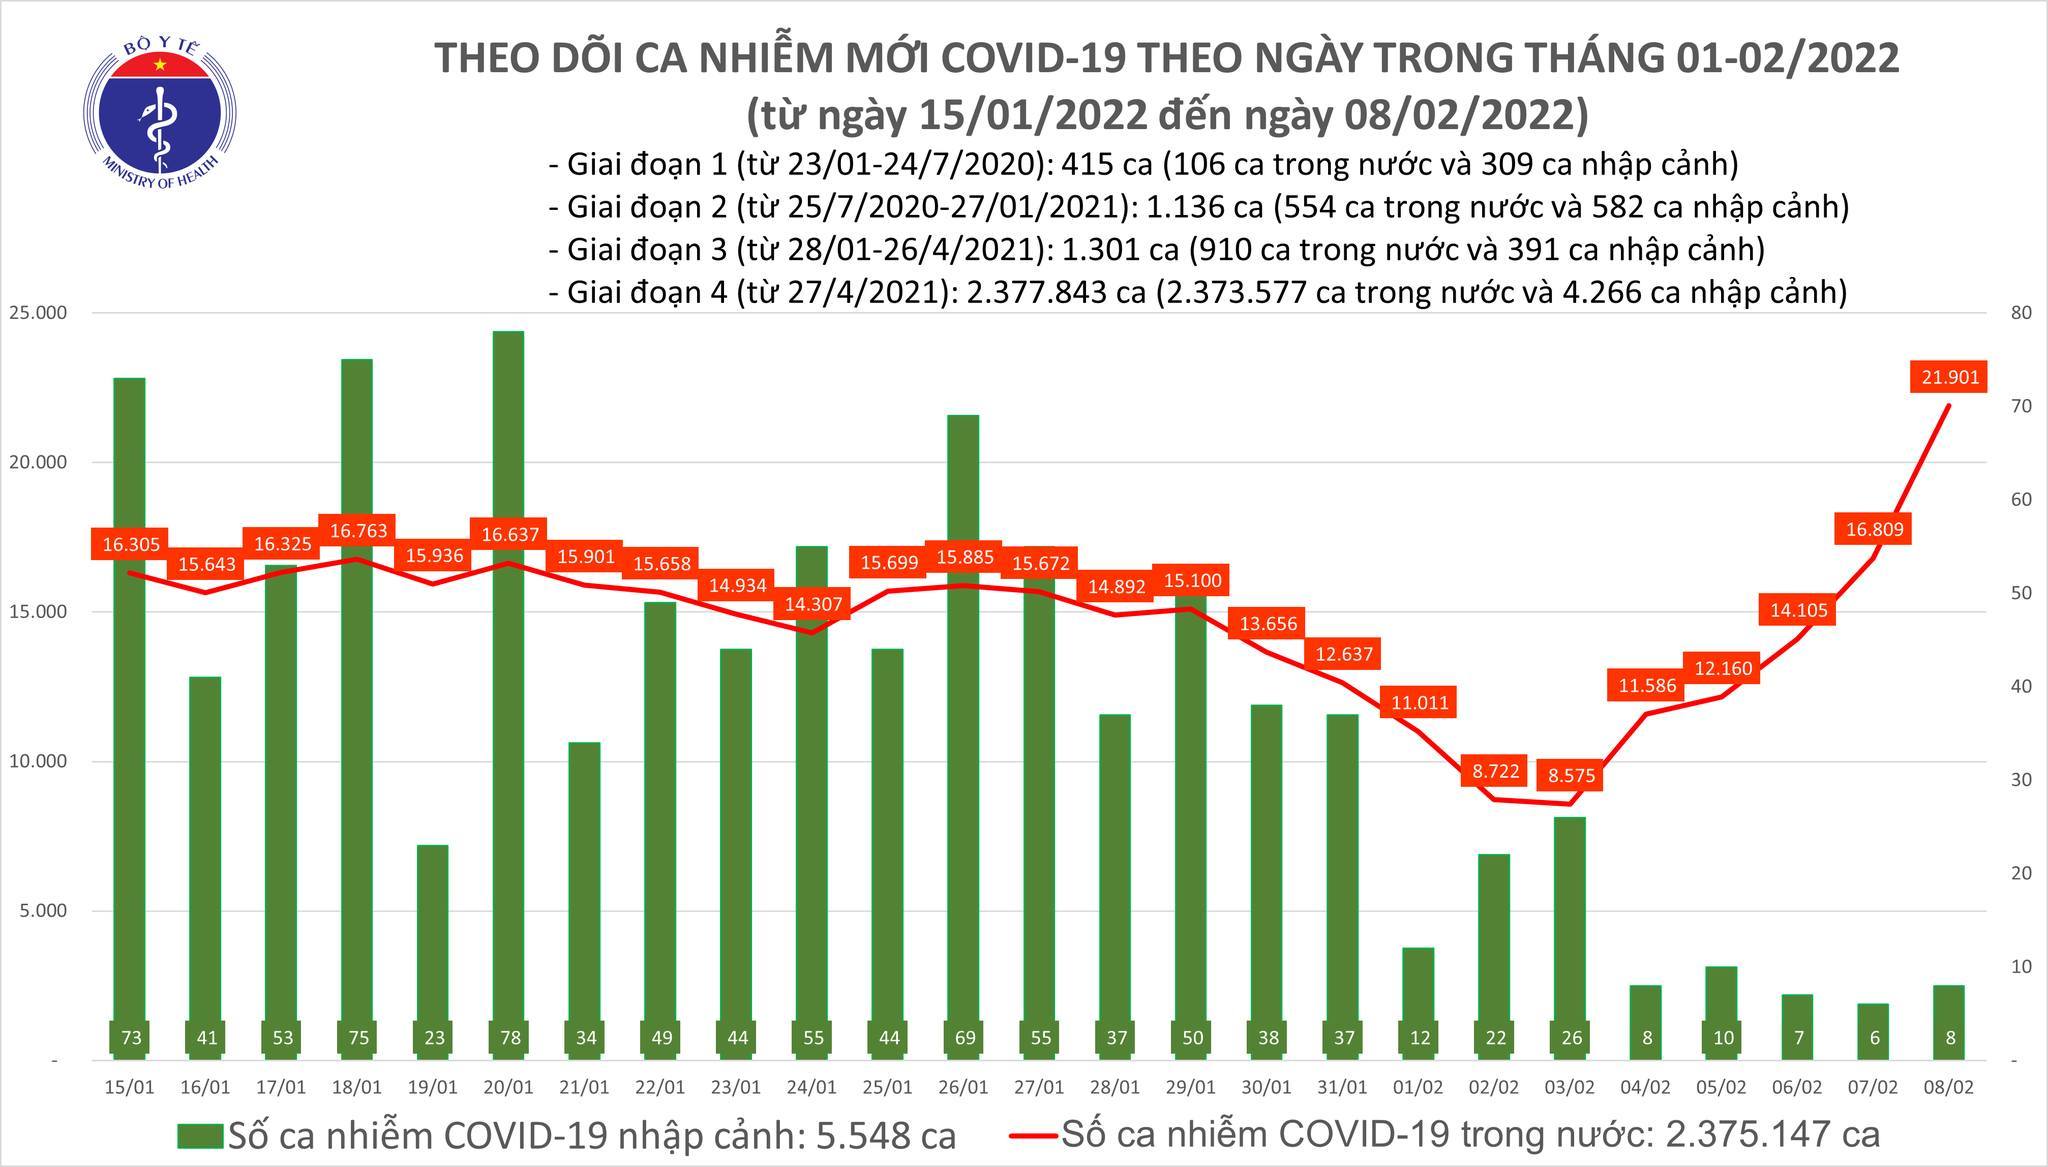 Tin tức Covid-19 hôm nay 8/2: Việt Nam thêm 21.909 ca mắc Covid-19 - Vietnamnet.vn